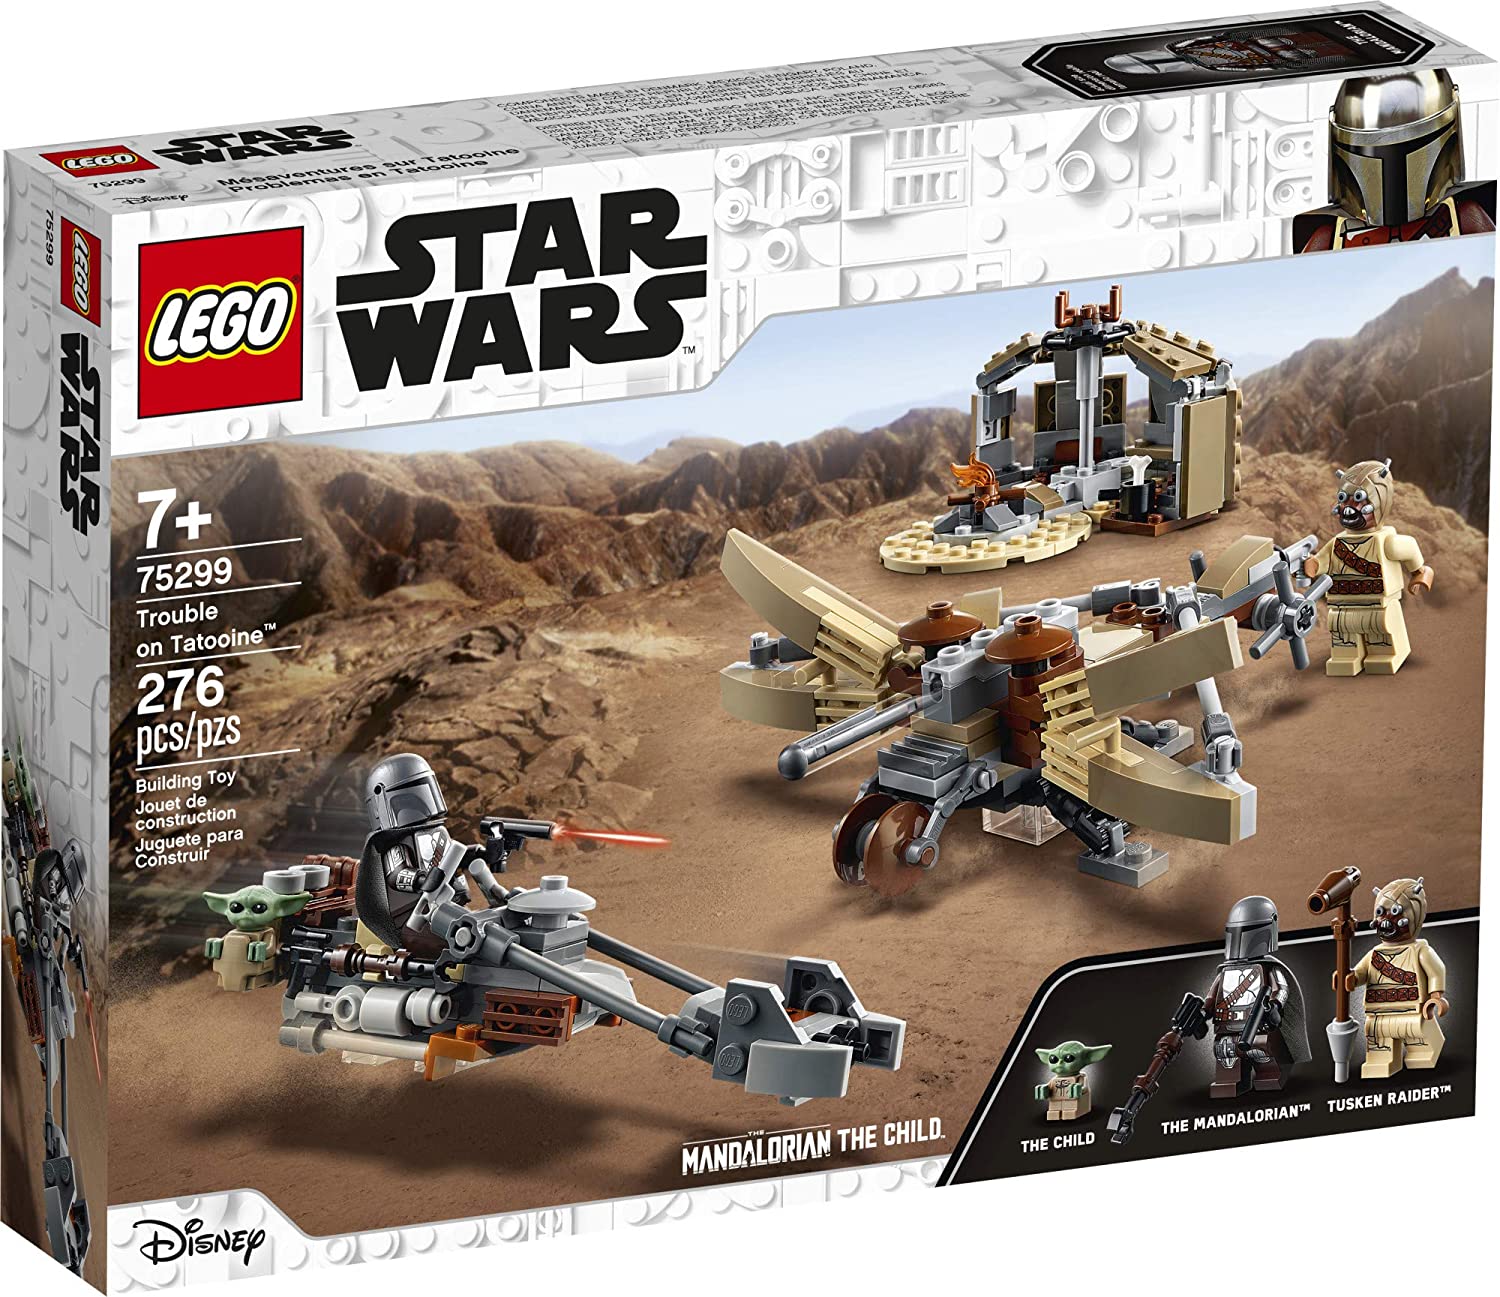 TM Trouble on Tatooine Lego Set 1